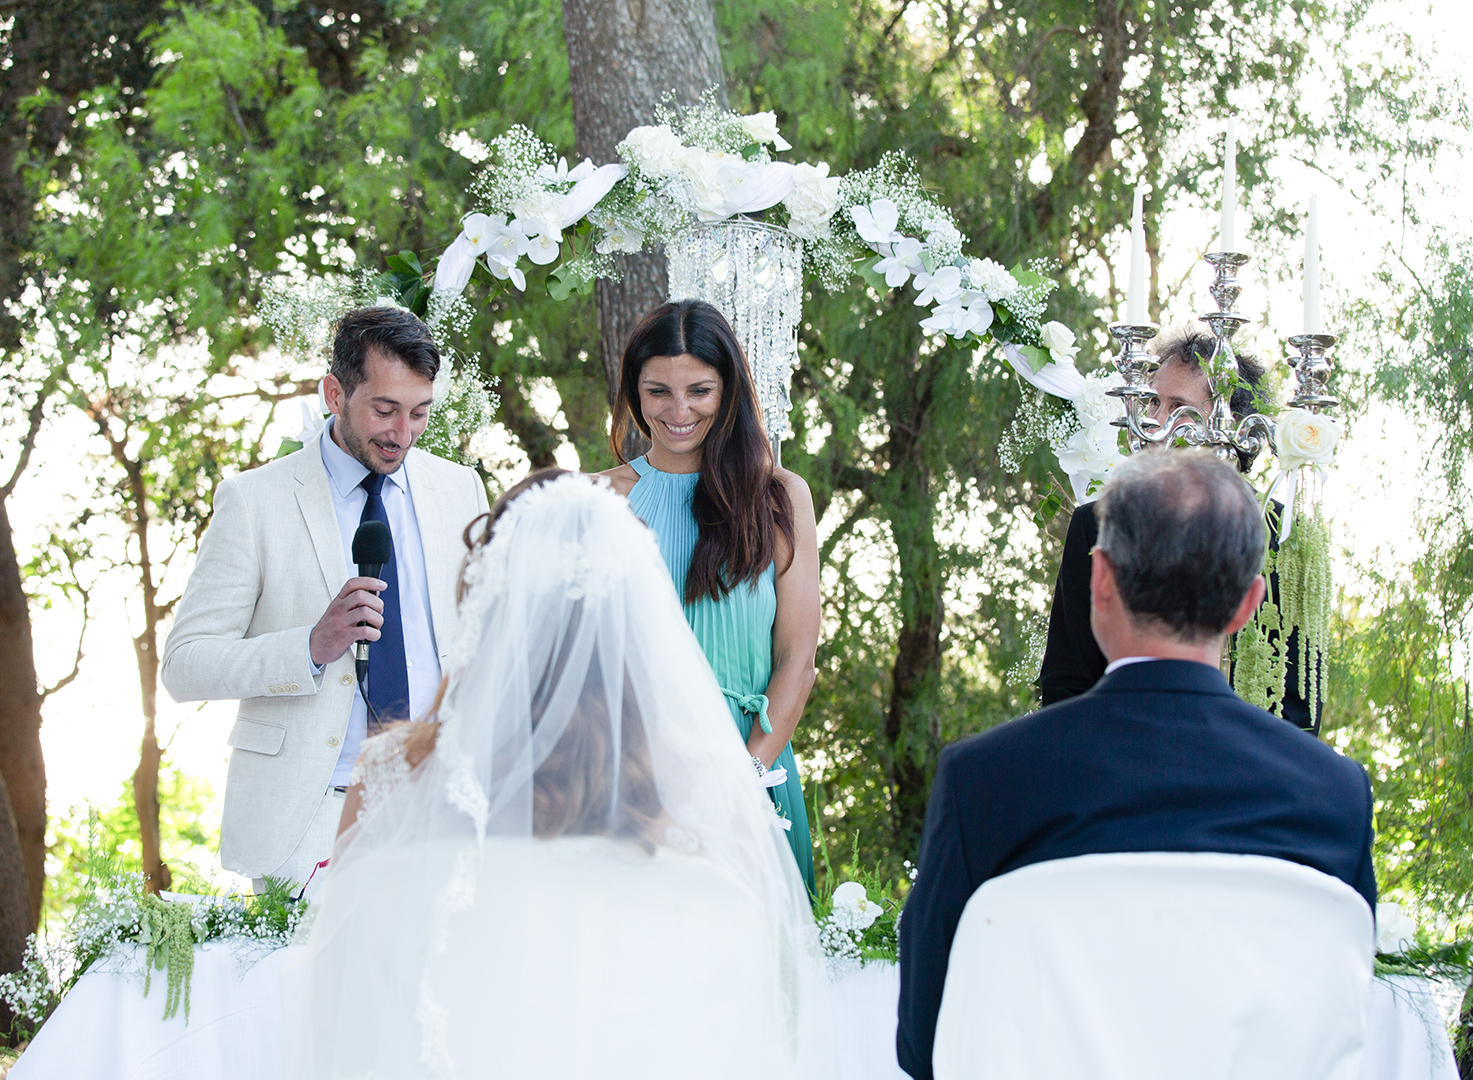 Monica Sutera fotografo - fotografo matrimonio agrigento - fotografo wedding agrigento - fotografa siciliana -fotografi matrimonio in sicilia - fotografi wedding agrigento -wedding palermo